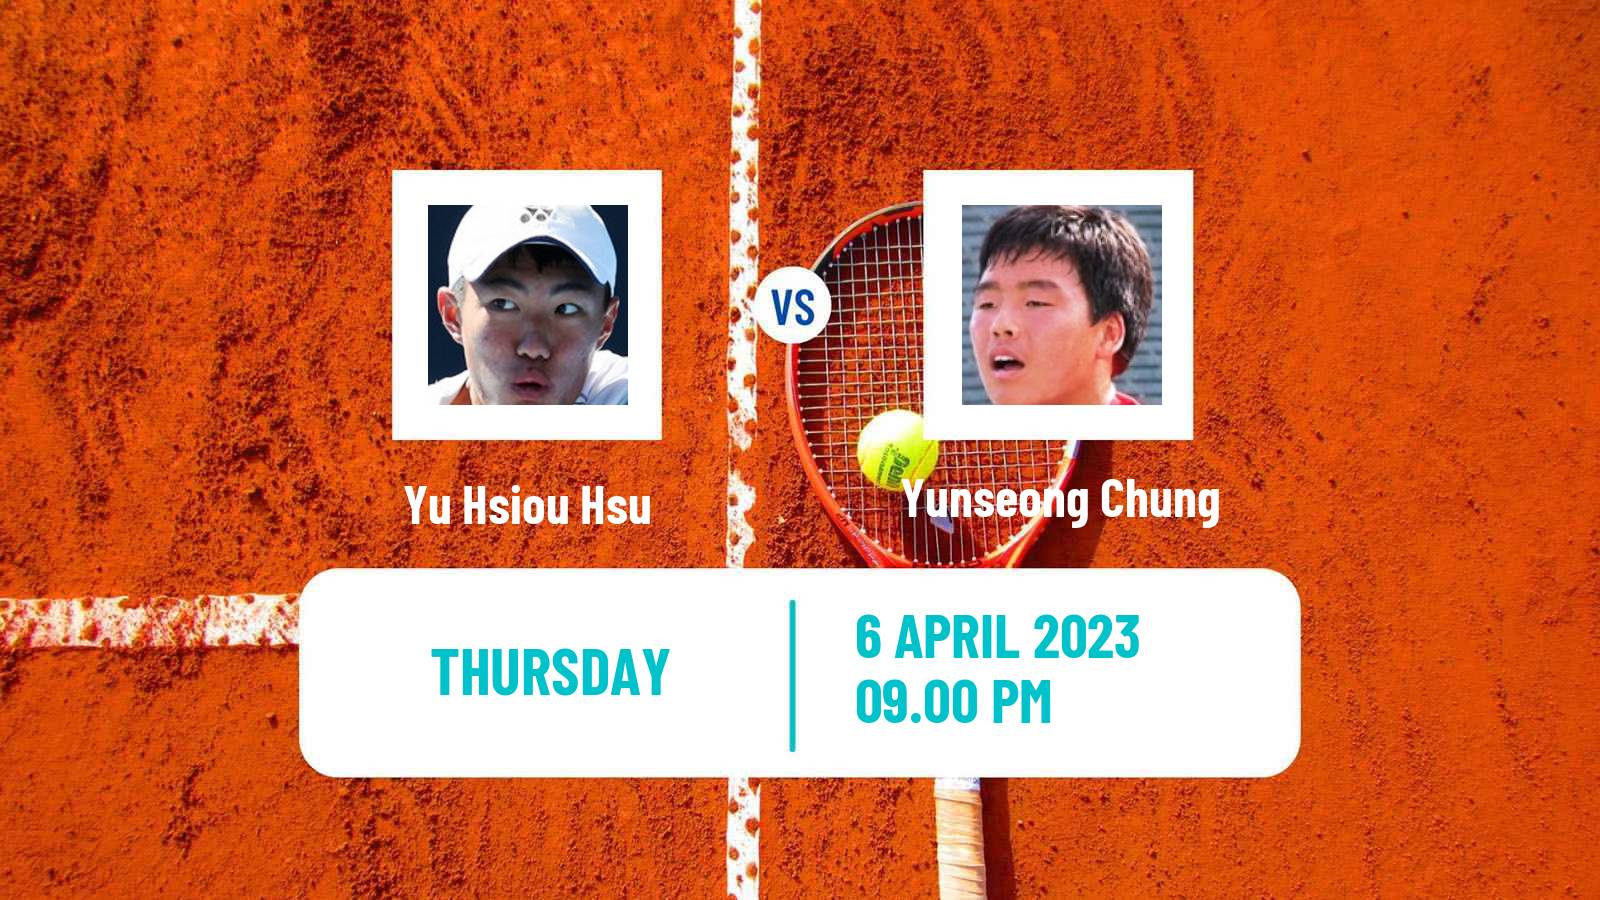 Tennis ITF Tournaments Yu Hsiou Hsu - Yunseong Chung